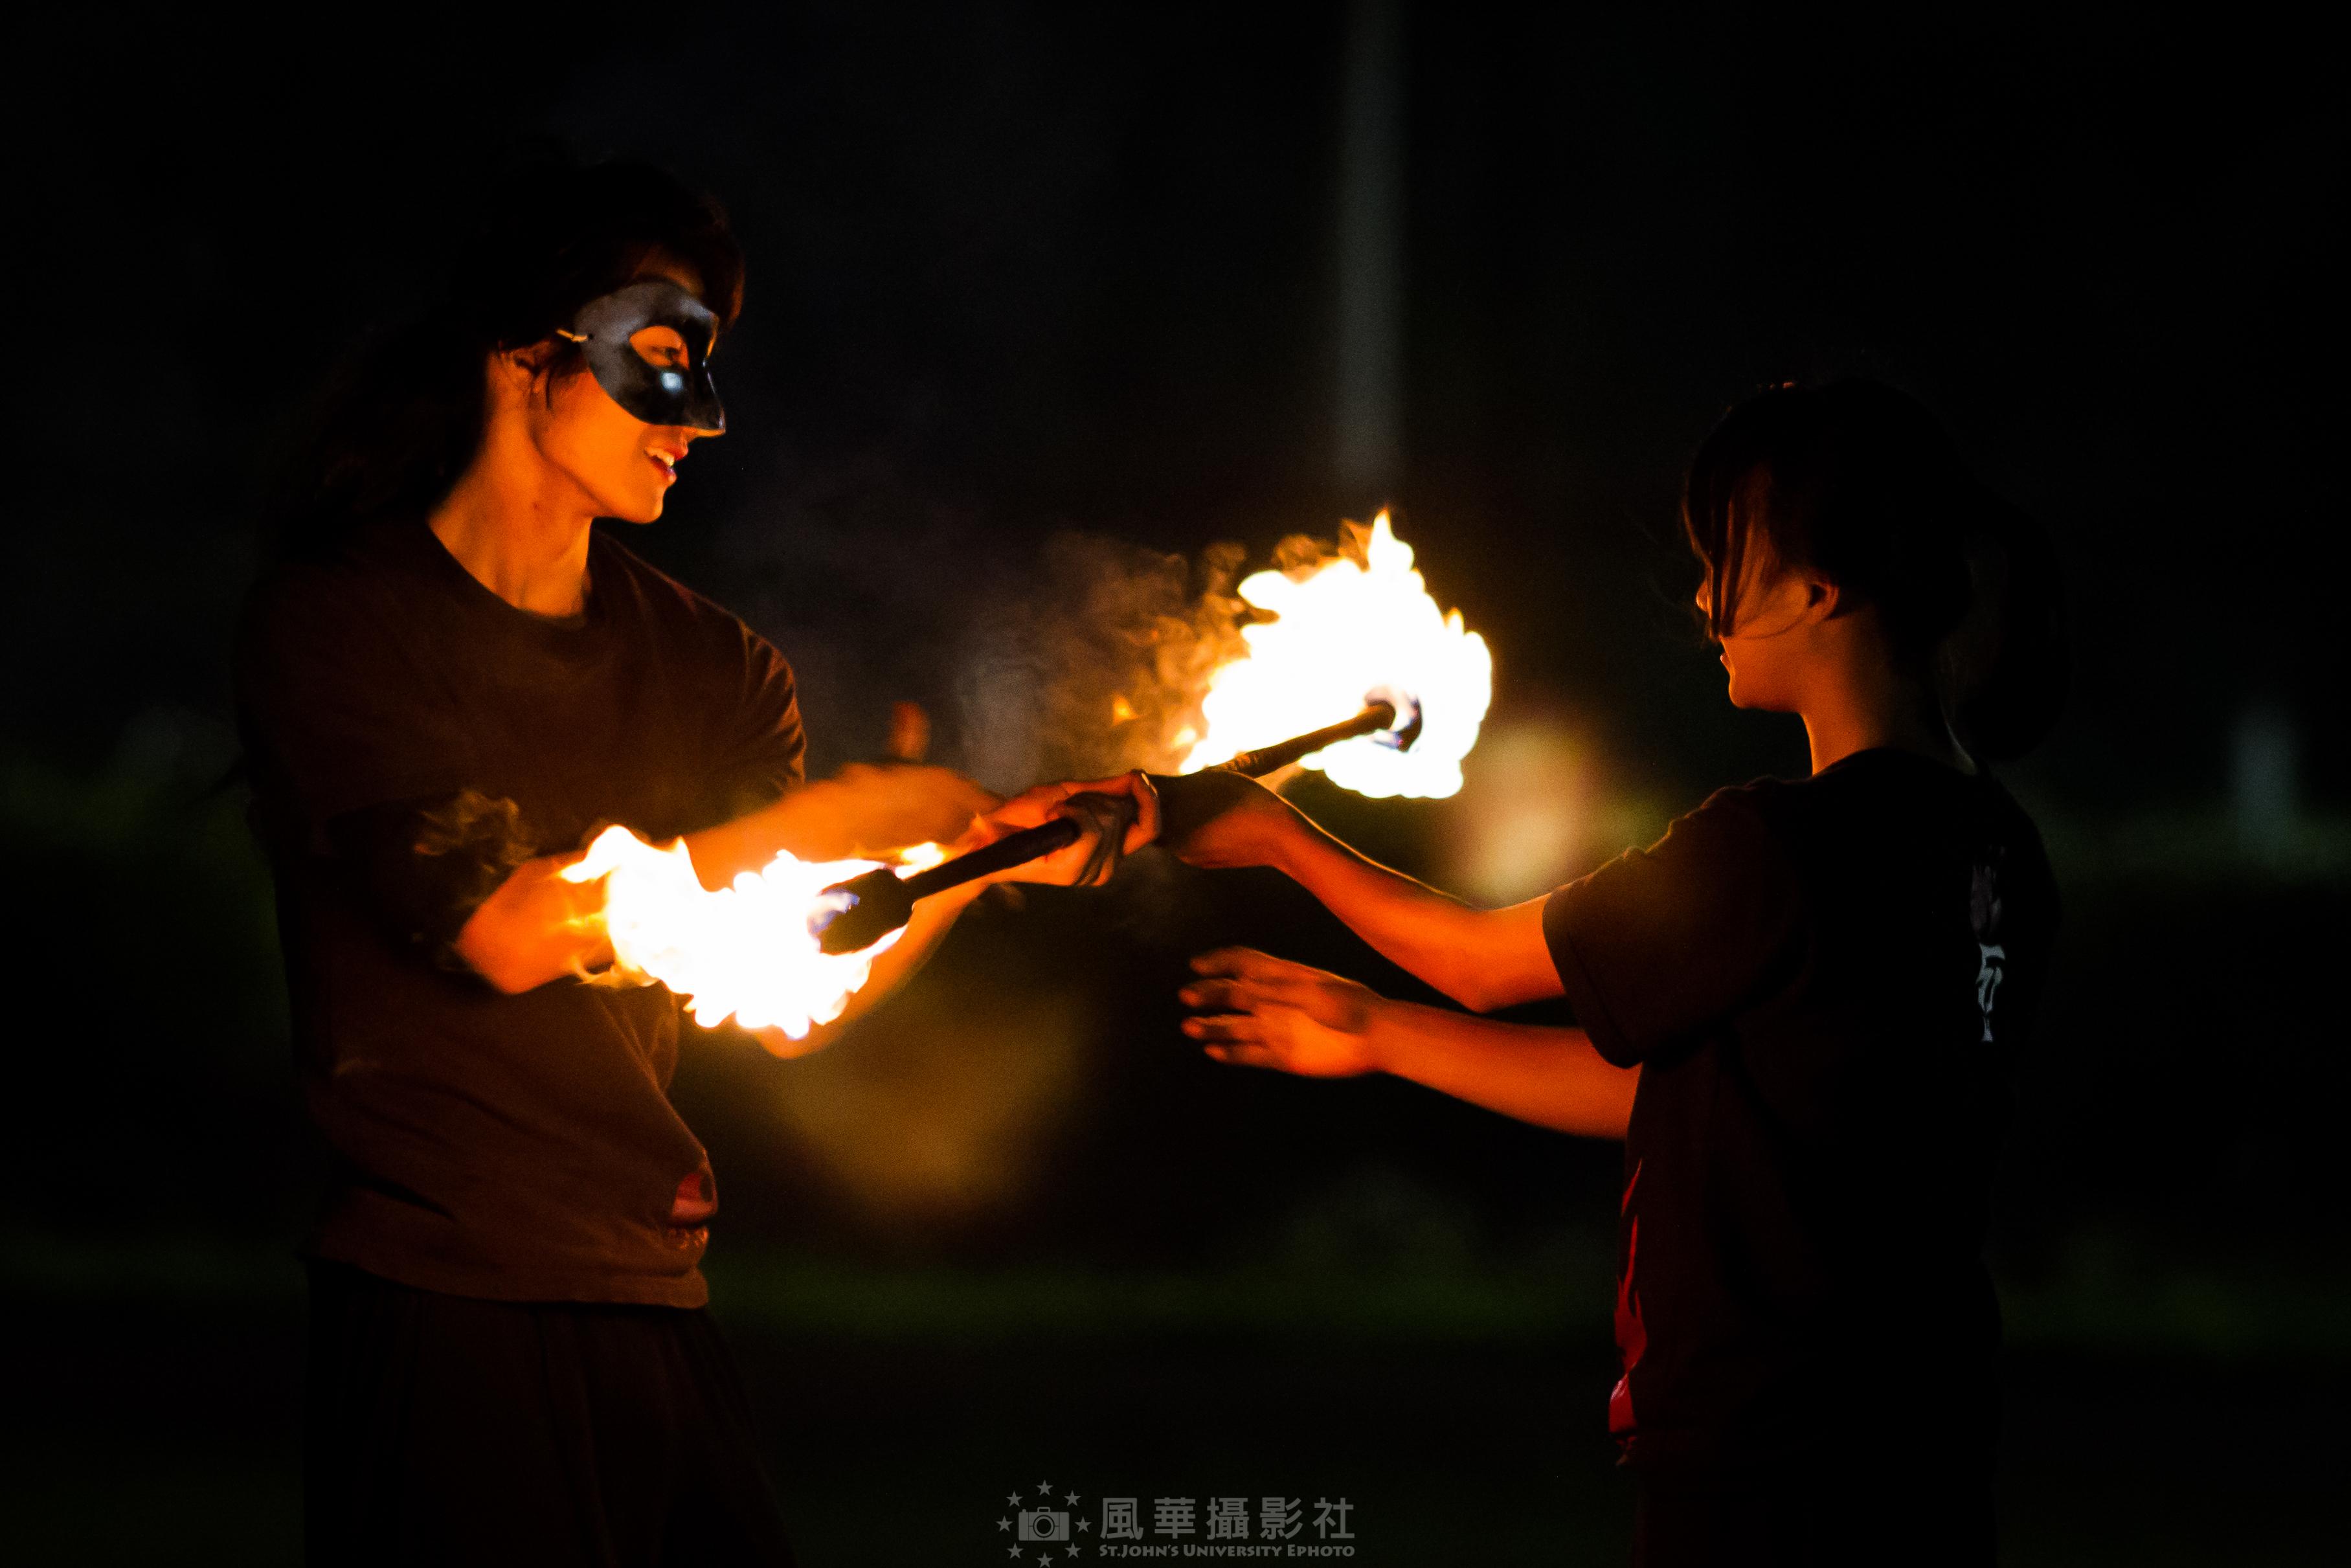 玩火少年愛冒險  聖約大火舞社焰會表演超吸睛-火舞社